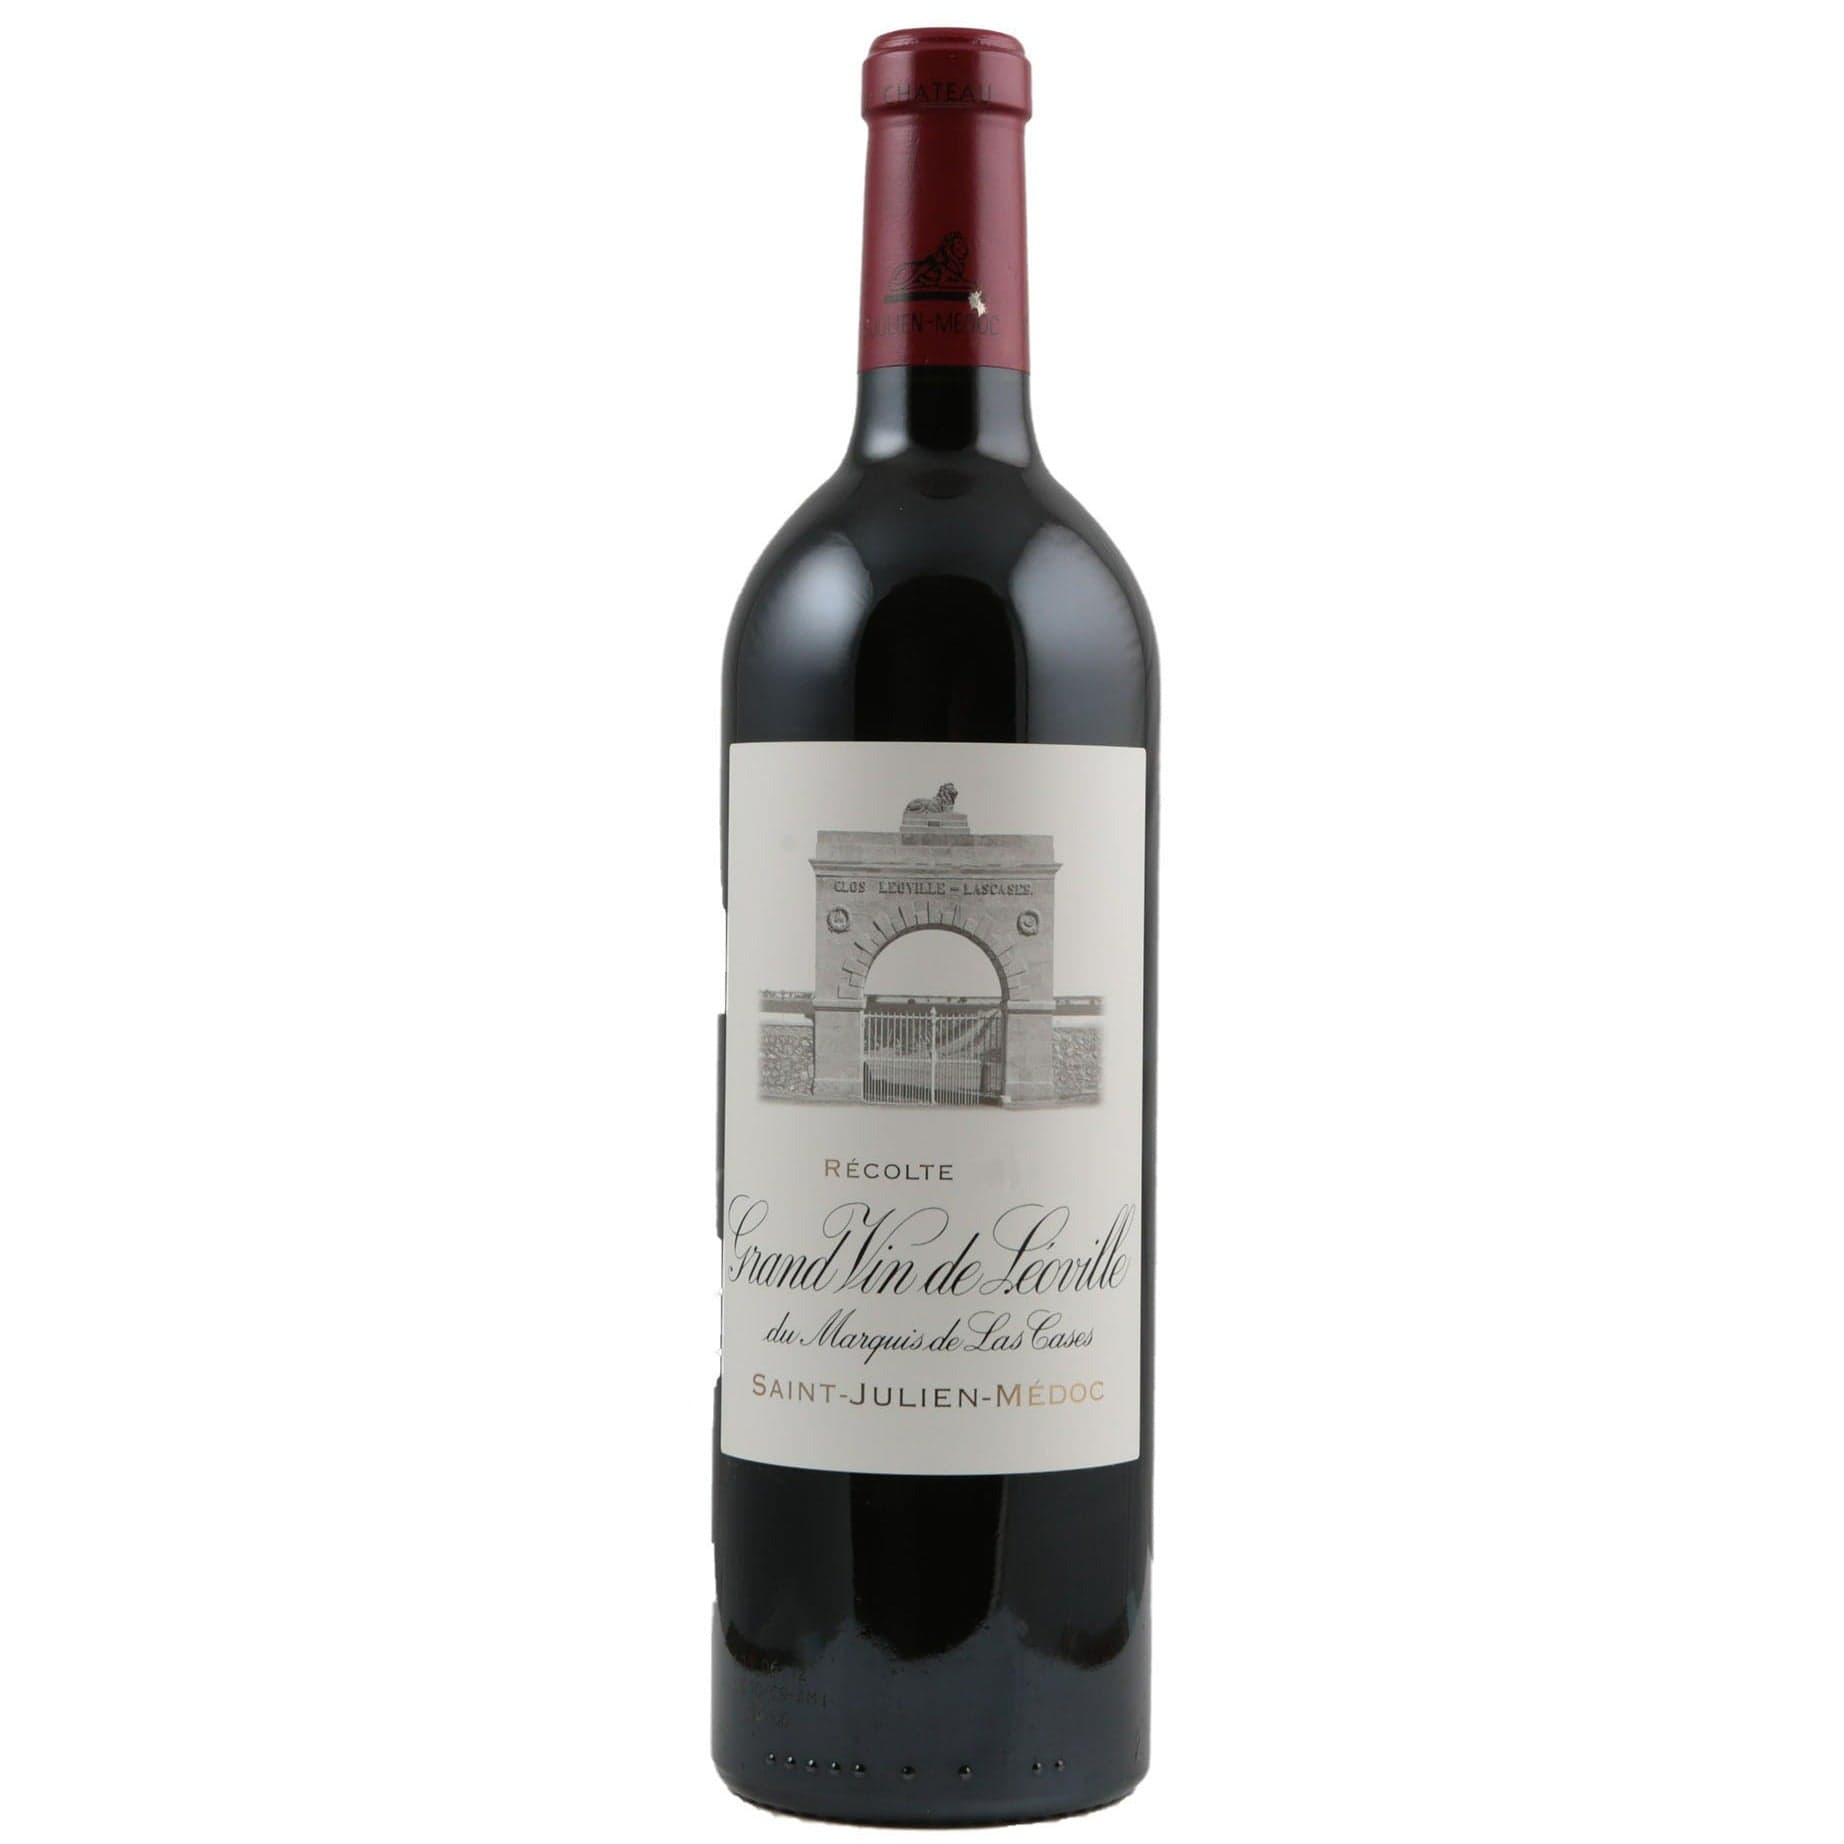 Single bottle of Red wine Ch. Leoville-Las Cases, 2nd Growth Grand Cru Classe, Saint-Julien, 2000 77% Cabernet Sauvignon, 14% Cabernet Franc & 9% Merlot